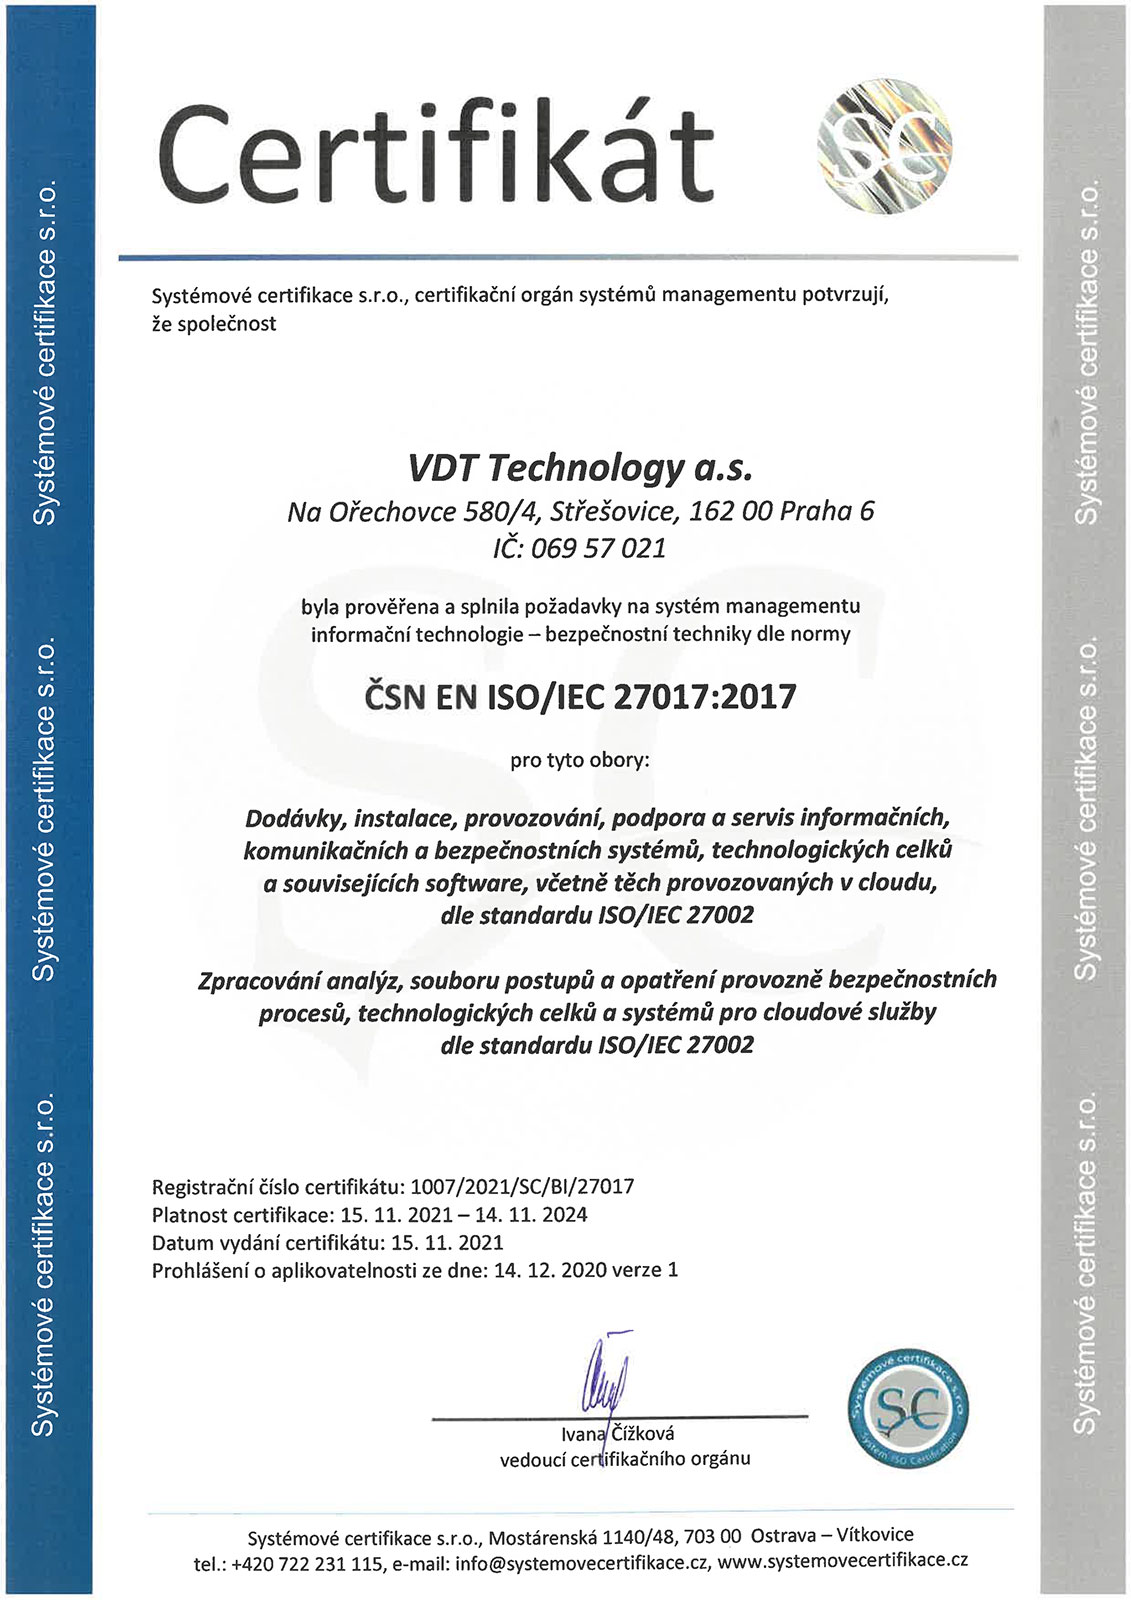 Certificate ČSN EN ISO/IEC 27017:2017